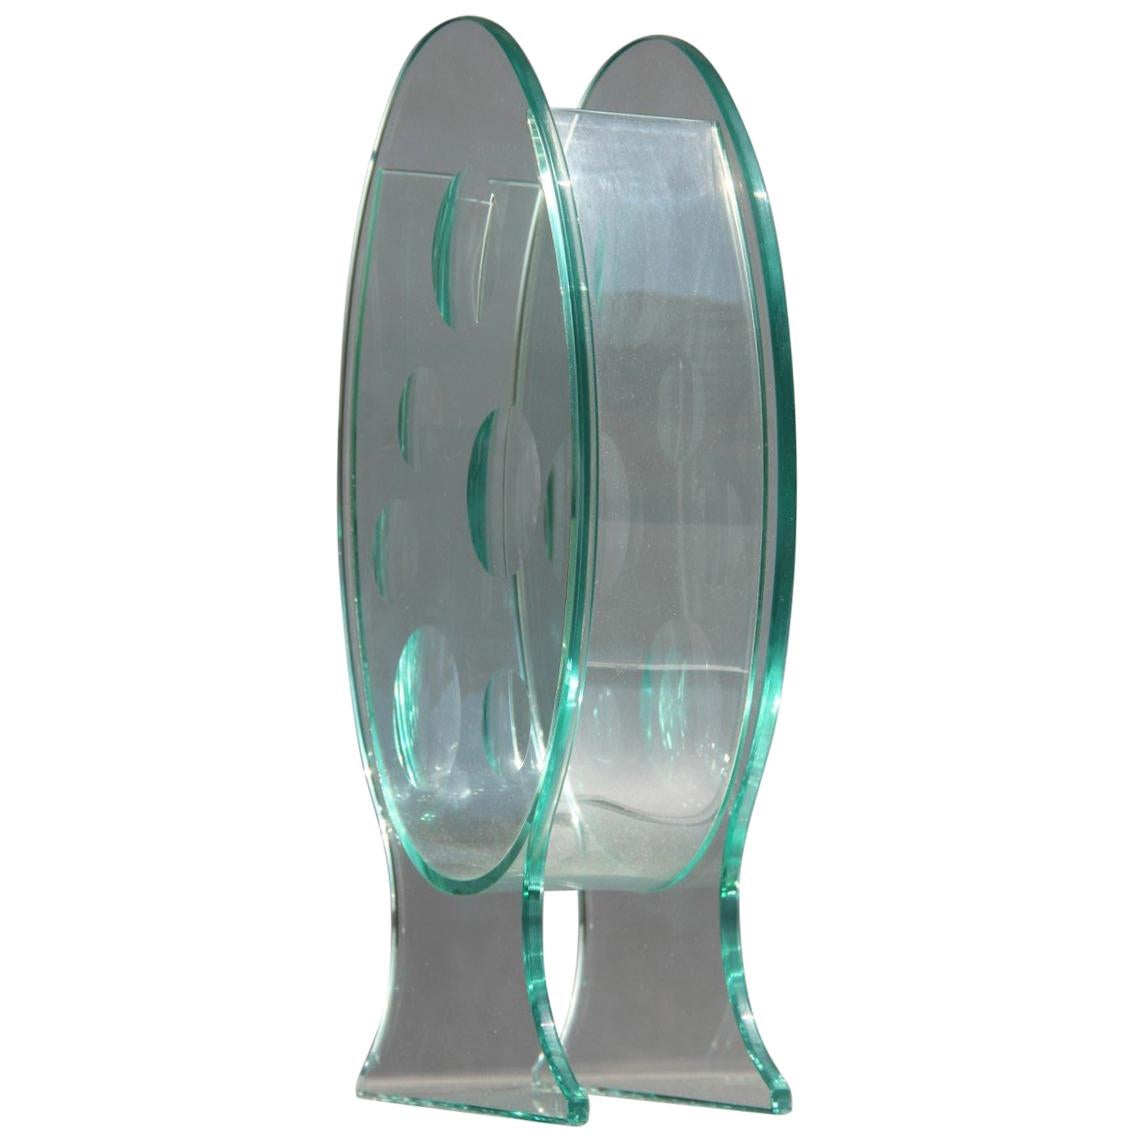 Vase sculptural ovale en cristal avec incisions rondes, design italien des années 1980, signé QA